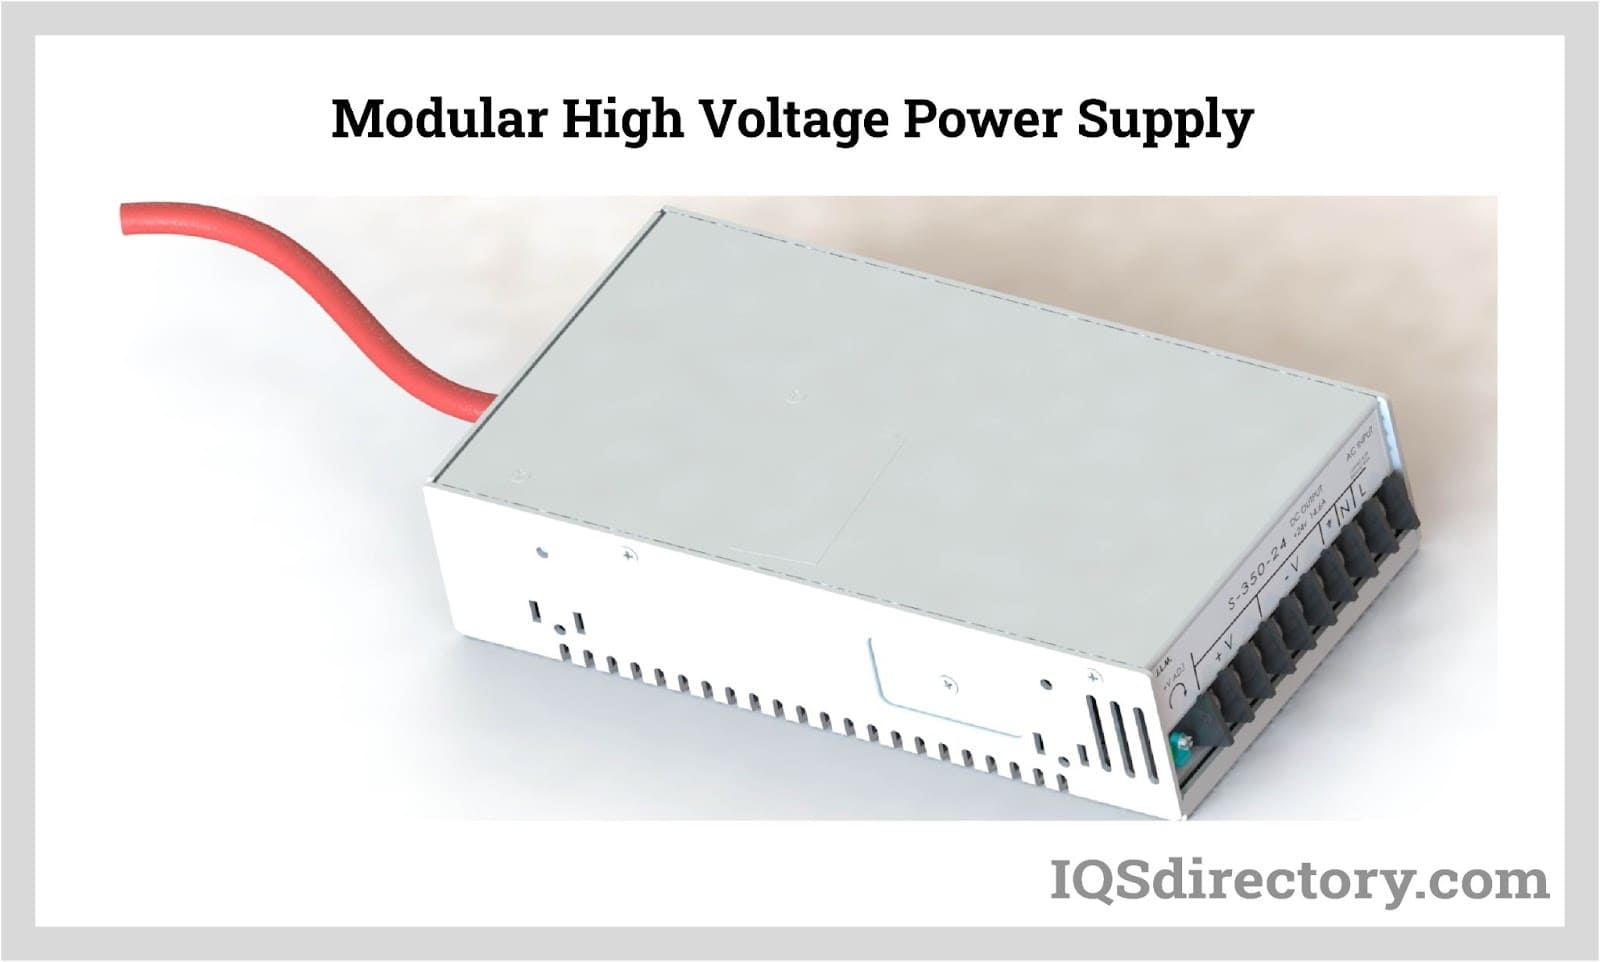 Modular High Voltage Power Supply